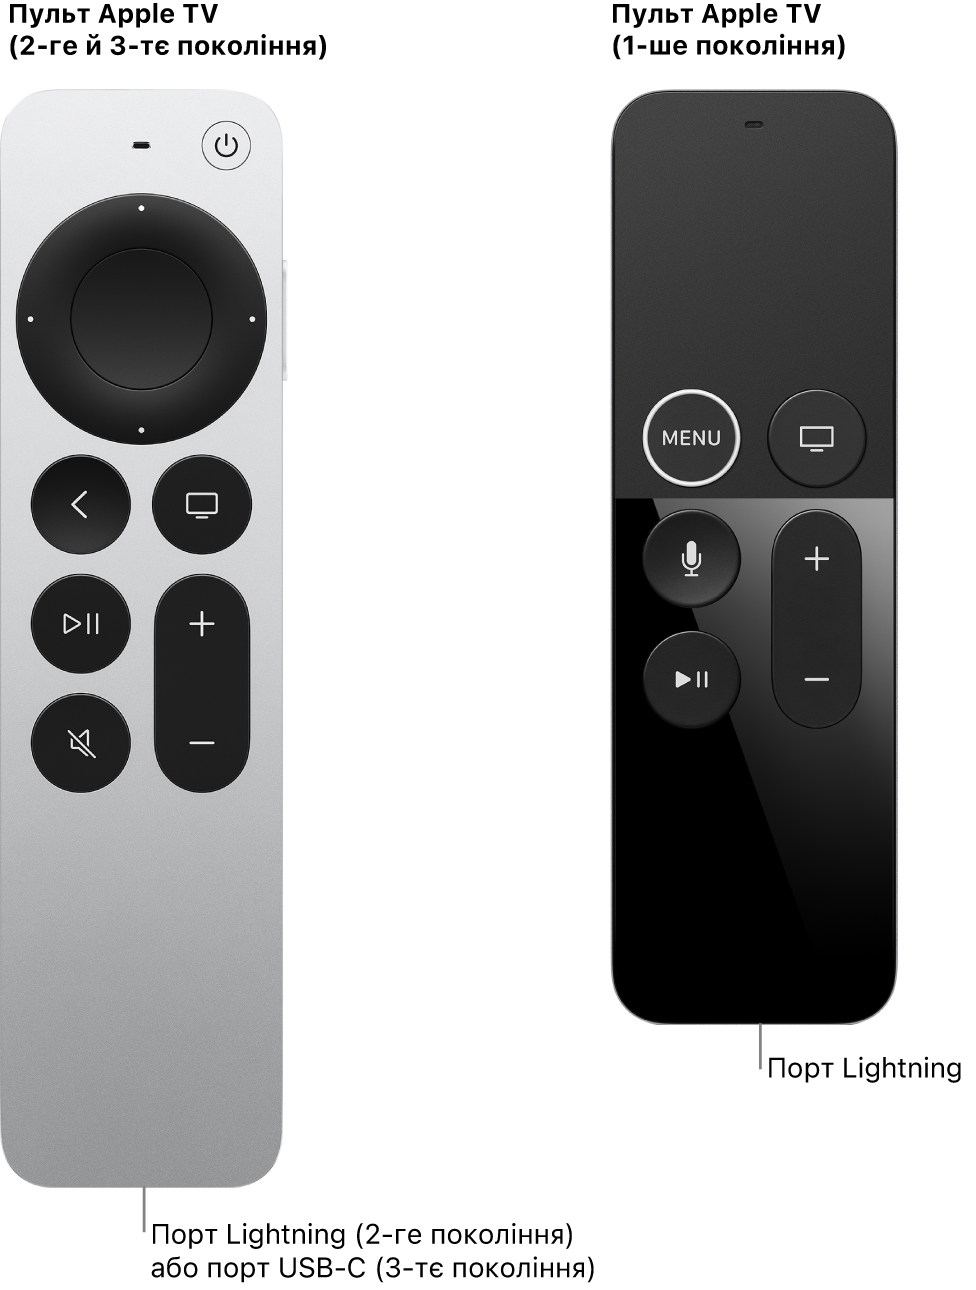 Зображення пульта Apple TV (2-ге покоління) та пульта Apple TV (1-ше покоління), на якому показано порт Lightning